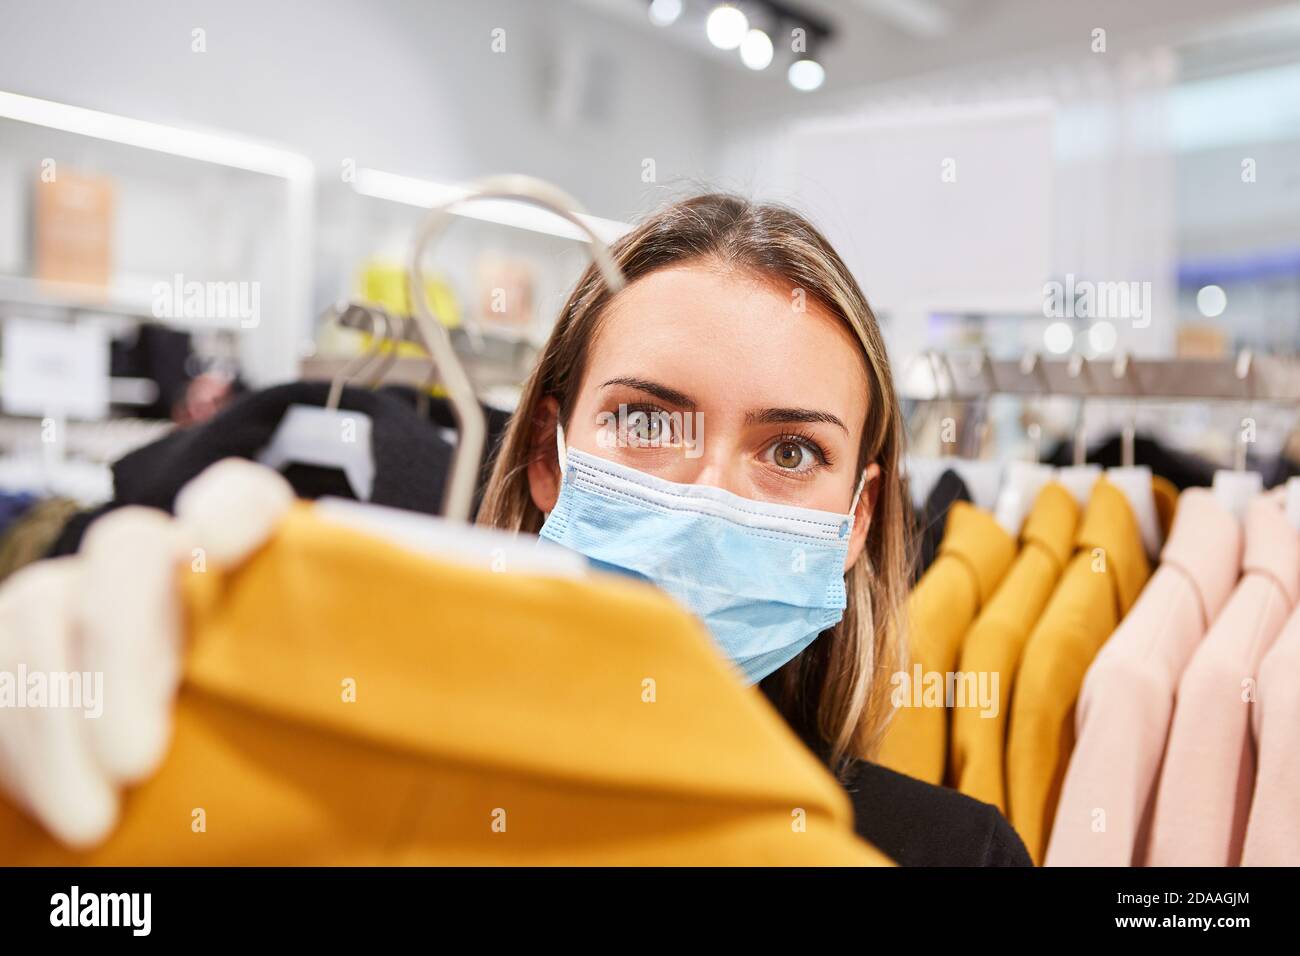 Cliente con maschera a causa della pandemia di Covid-19 in una boutique durante lo shopping Foto Stock